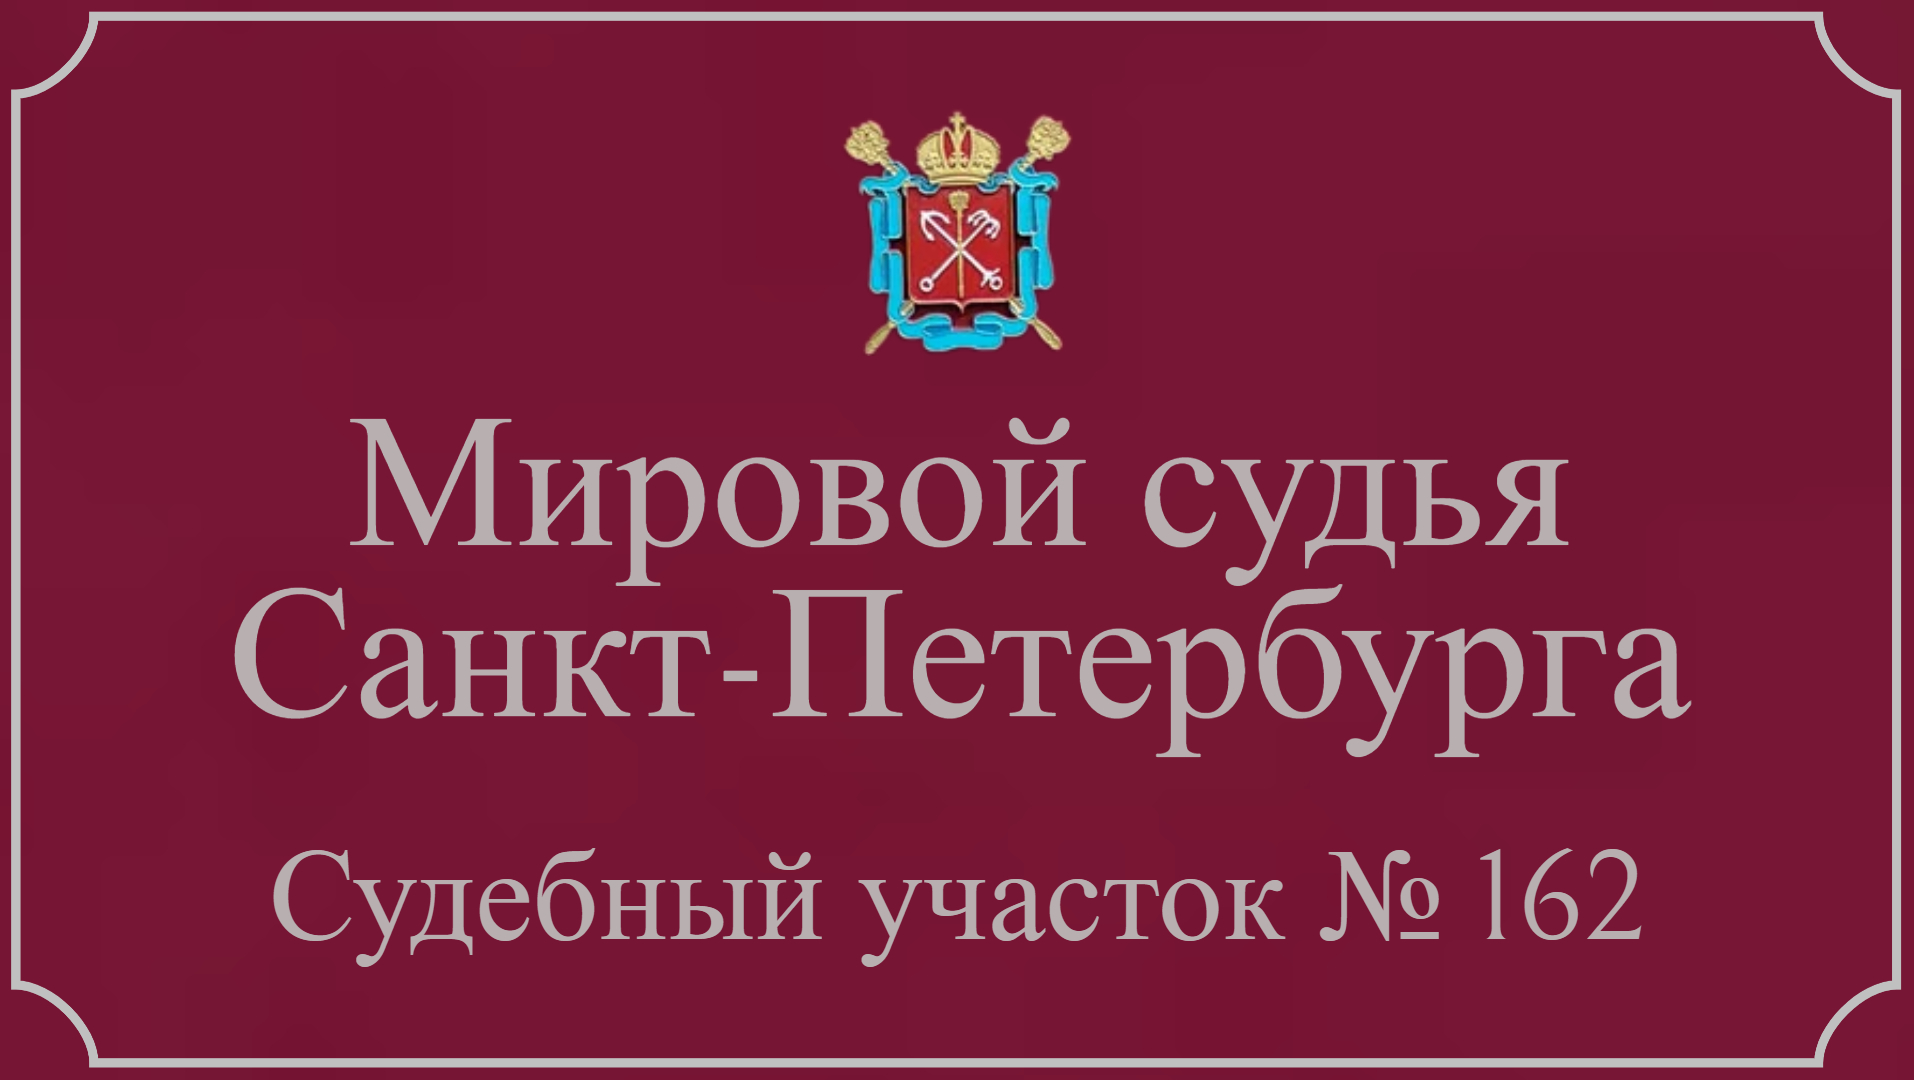 Информация по 162 судебному участку в Санкт-Петербурге.